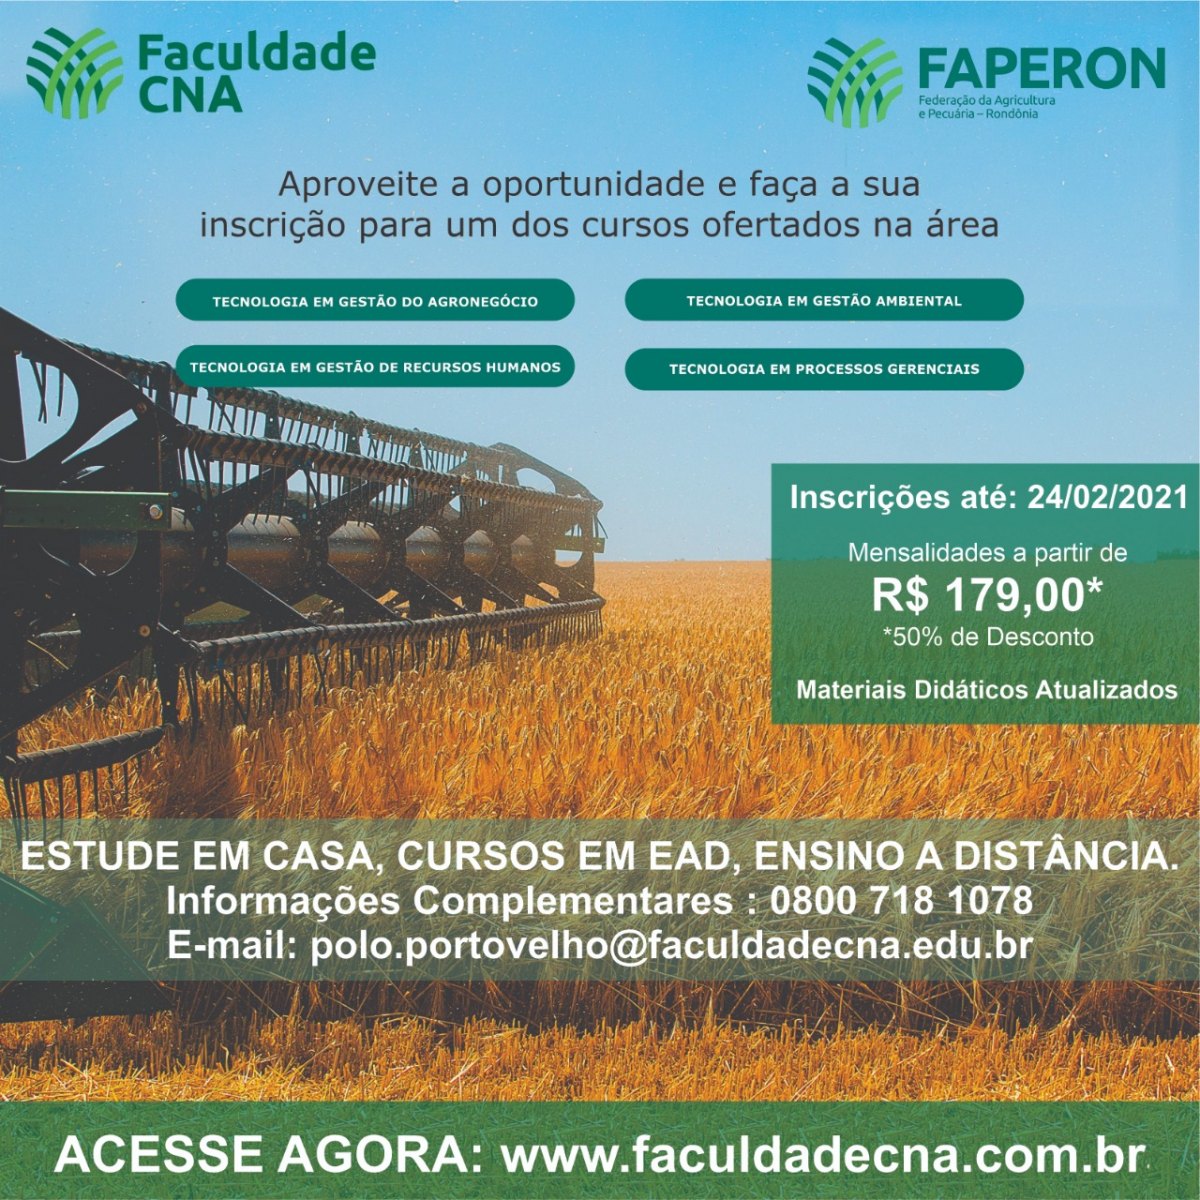 AGRICULTURA: Faperon e CNA promovem cursos voltados para o agronegócio em RO